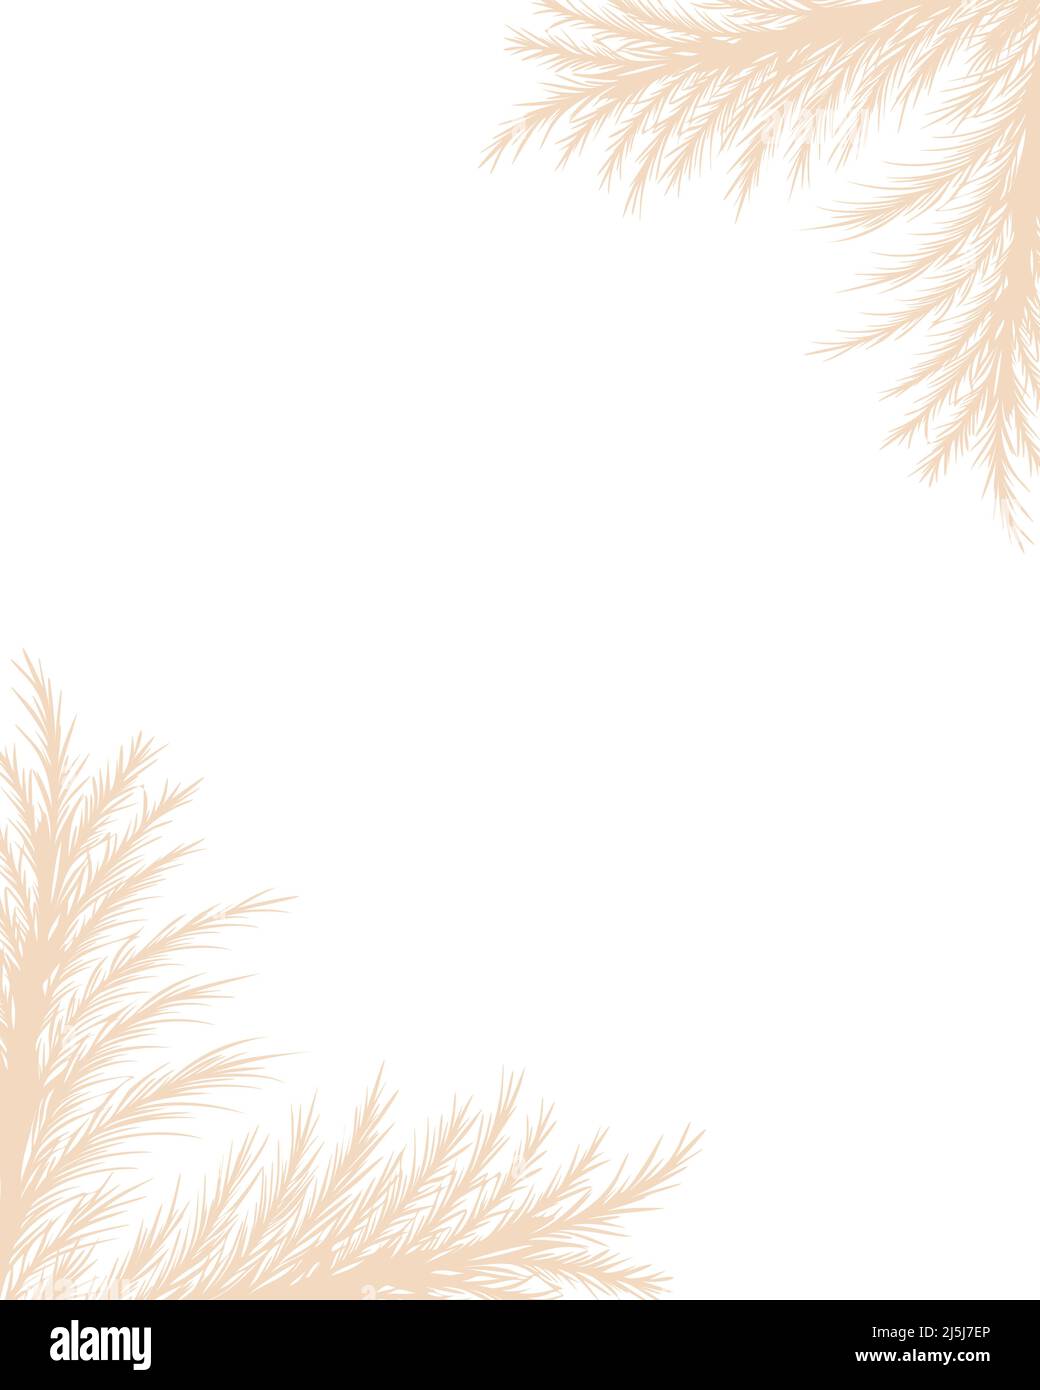 Trockenes Pampagras. Rahmendesign mit floralem Rand. Beige cortaderia im Boho-Stil. Vektor getrocknete Blumen isoliert auf weißem Hintergrund. Trendige Vorlage für Stock Vektor